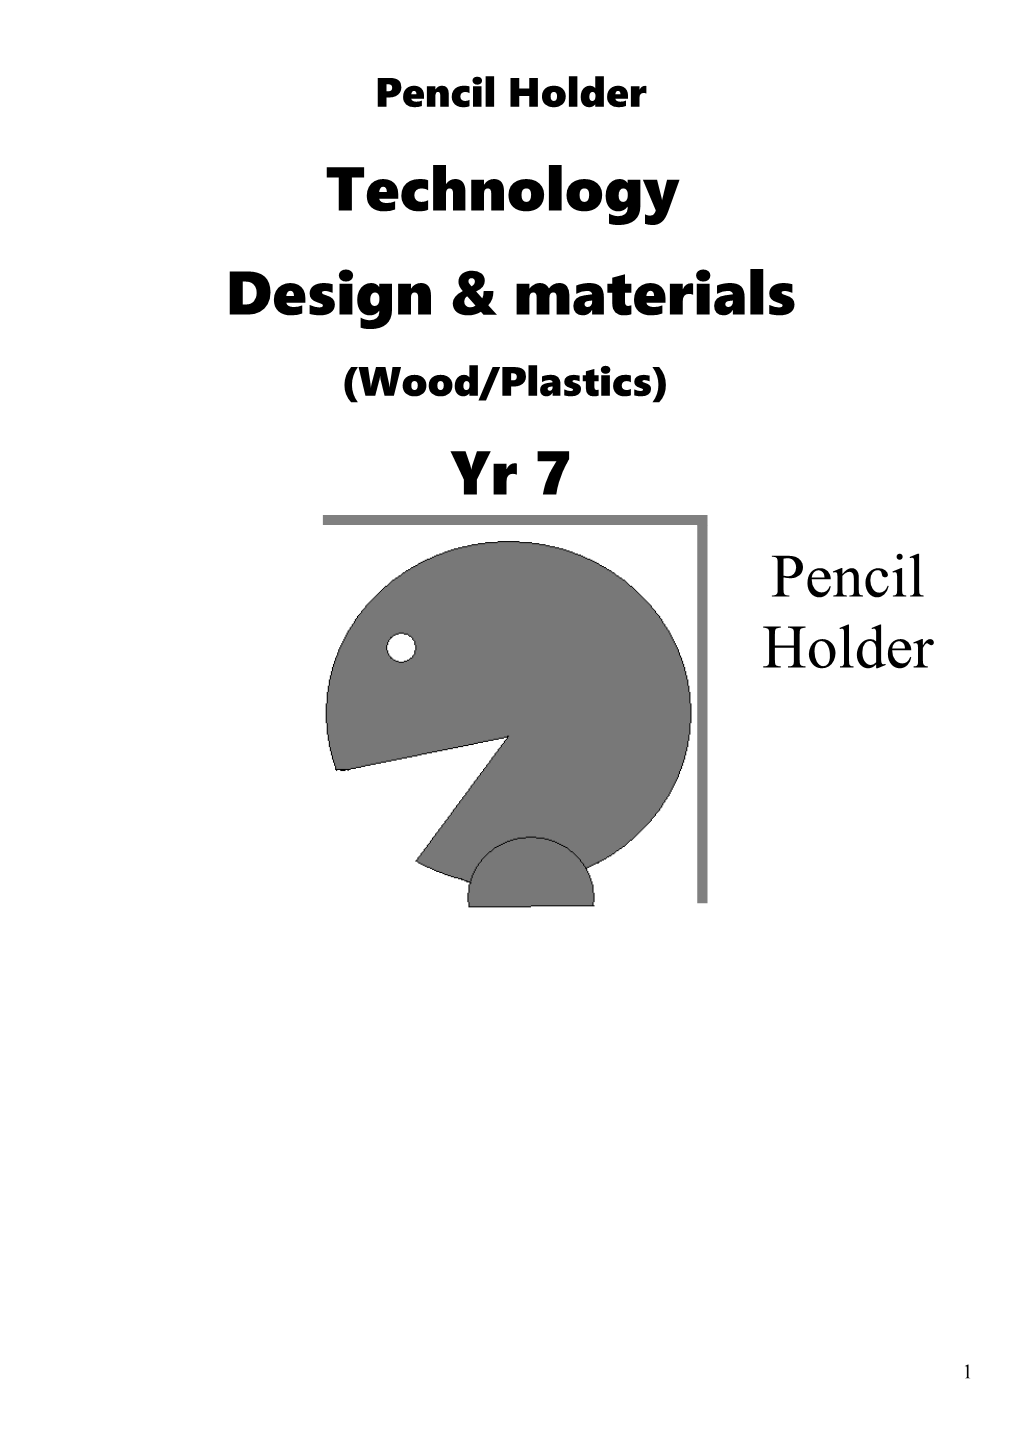 Design & Materials